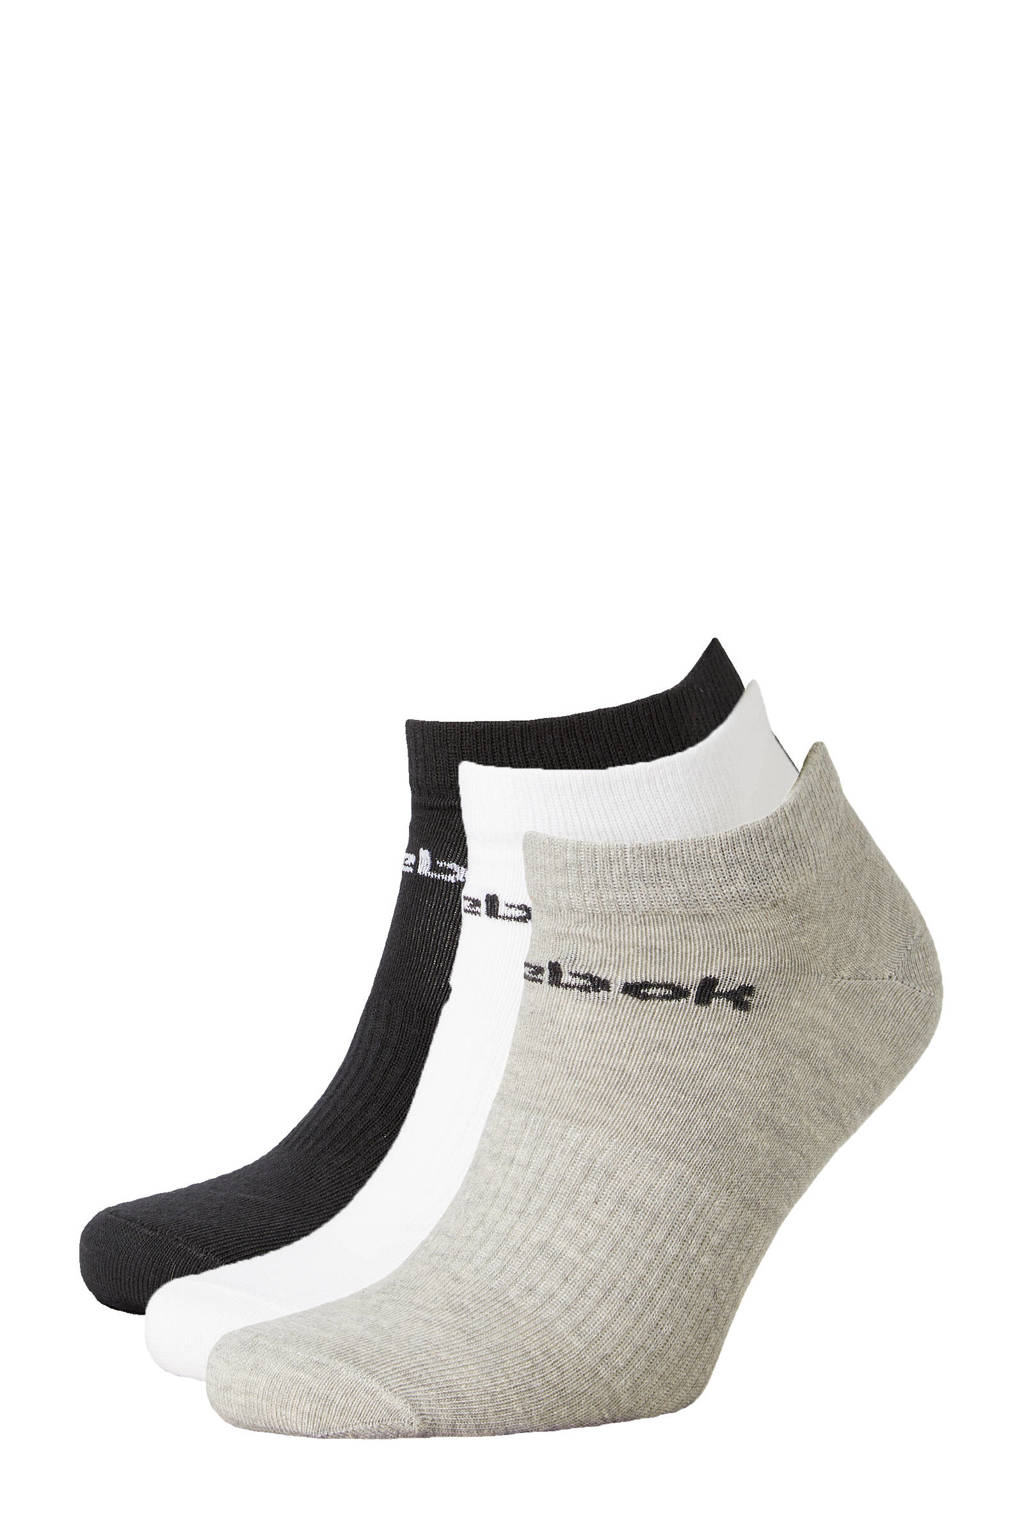 Reebok Training sokken -  set van 3 grijs/wit/zwart